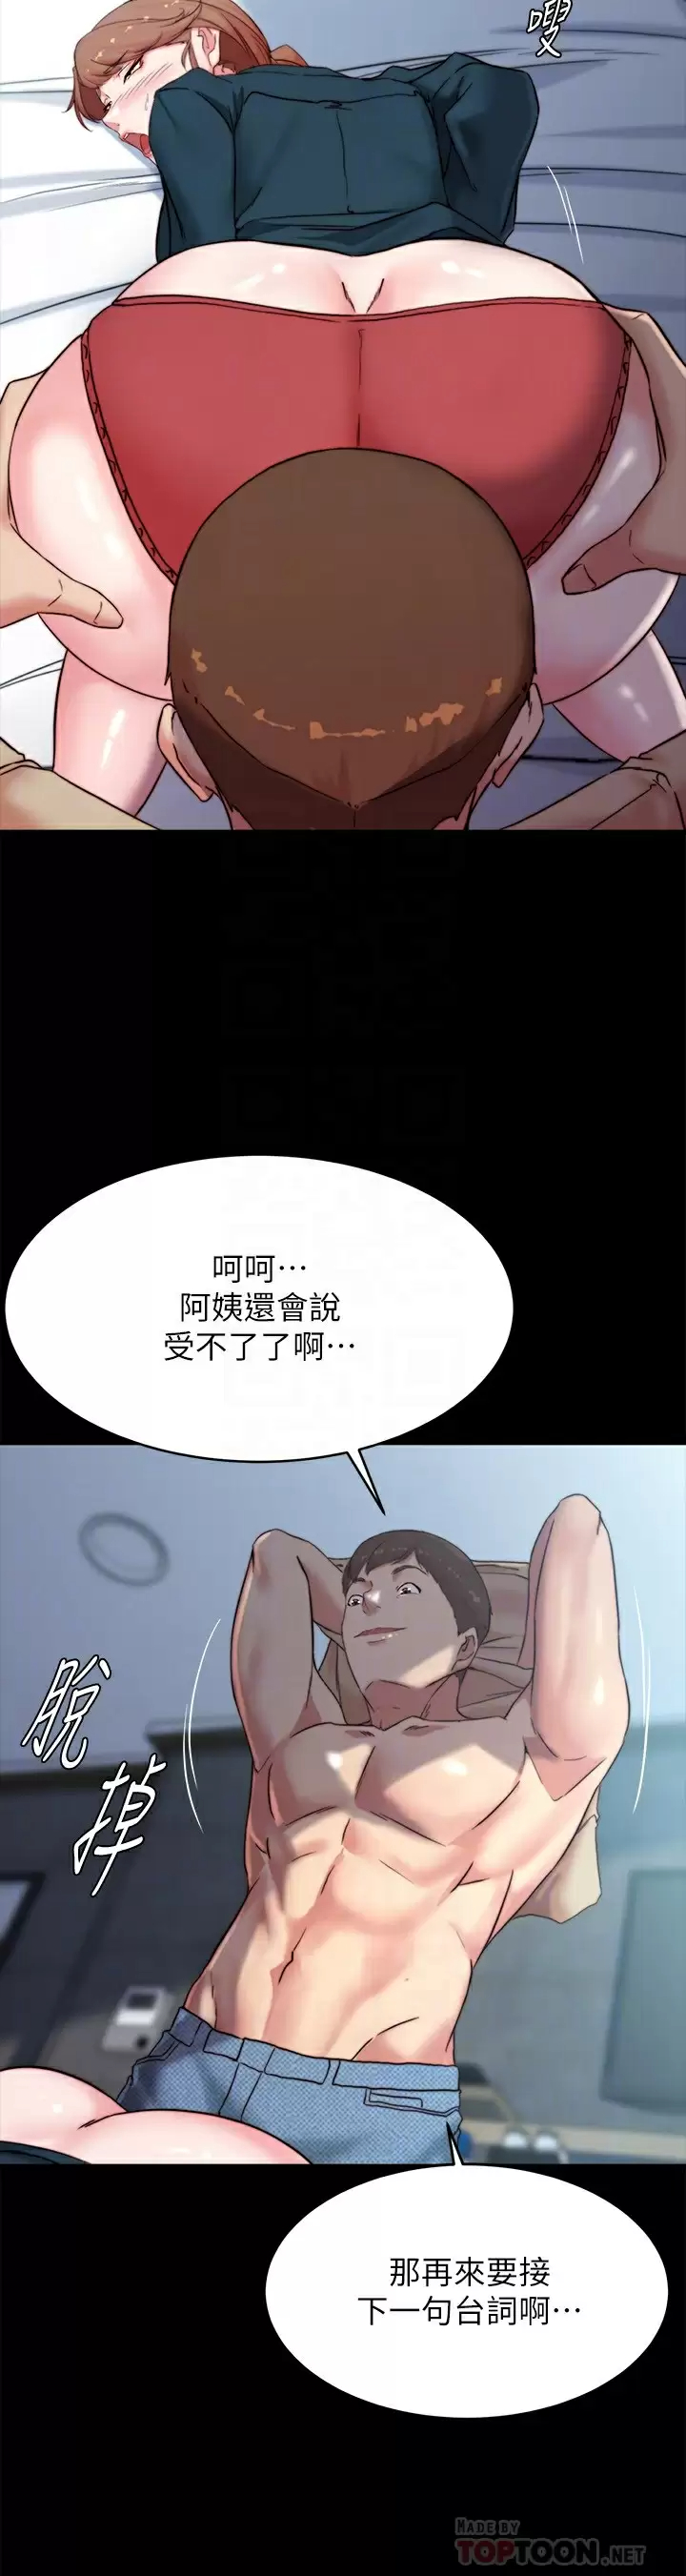 韩国污漫画 小褲褲筆記 第111话 被插上瘾的阿姨 12